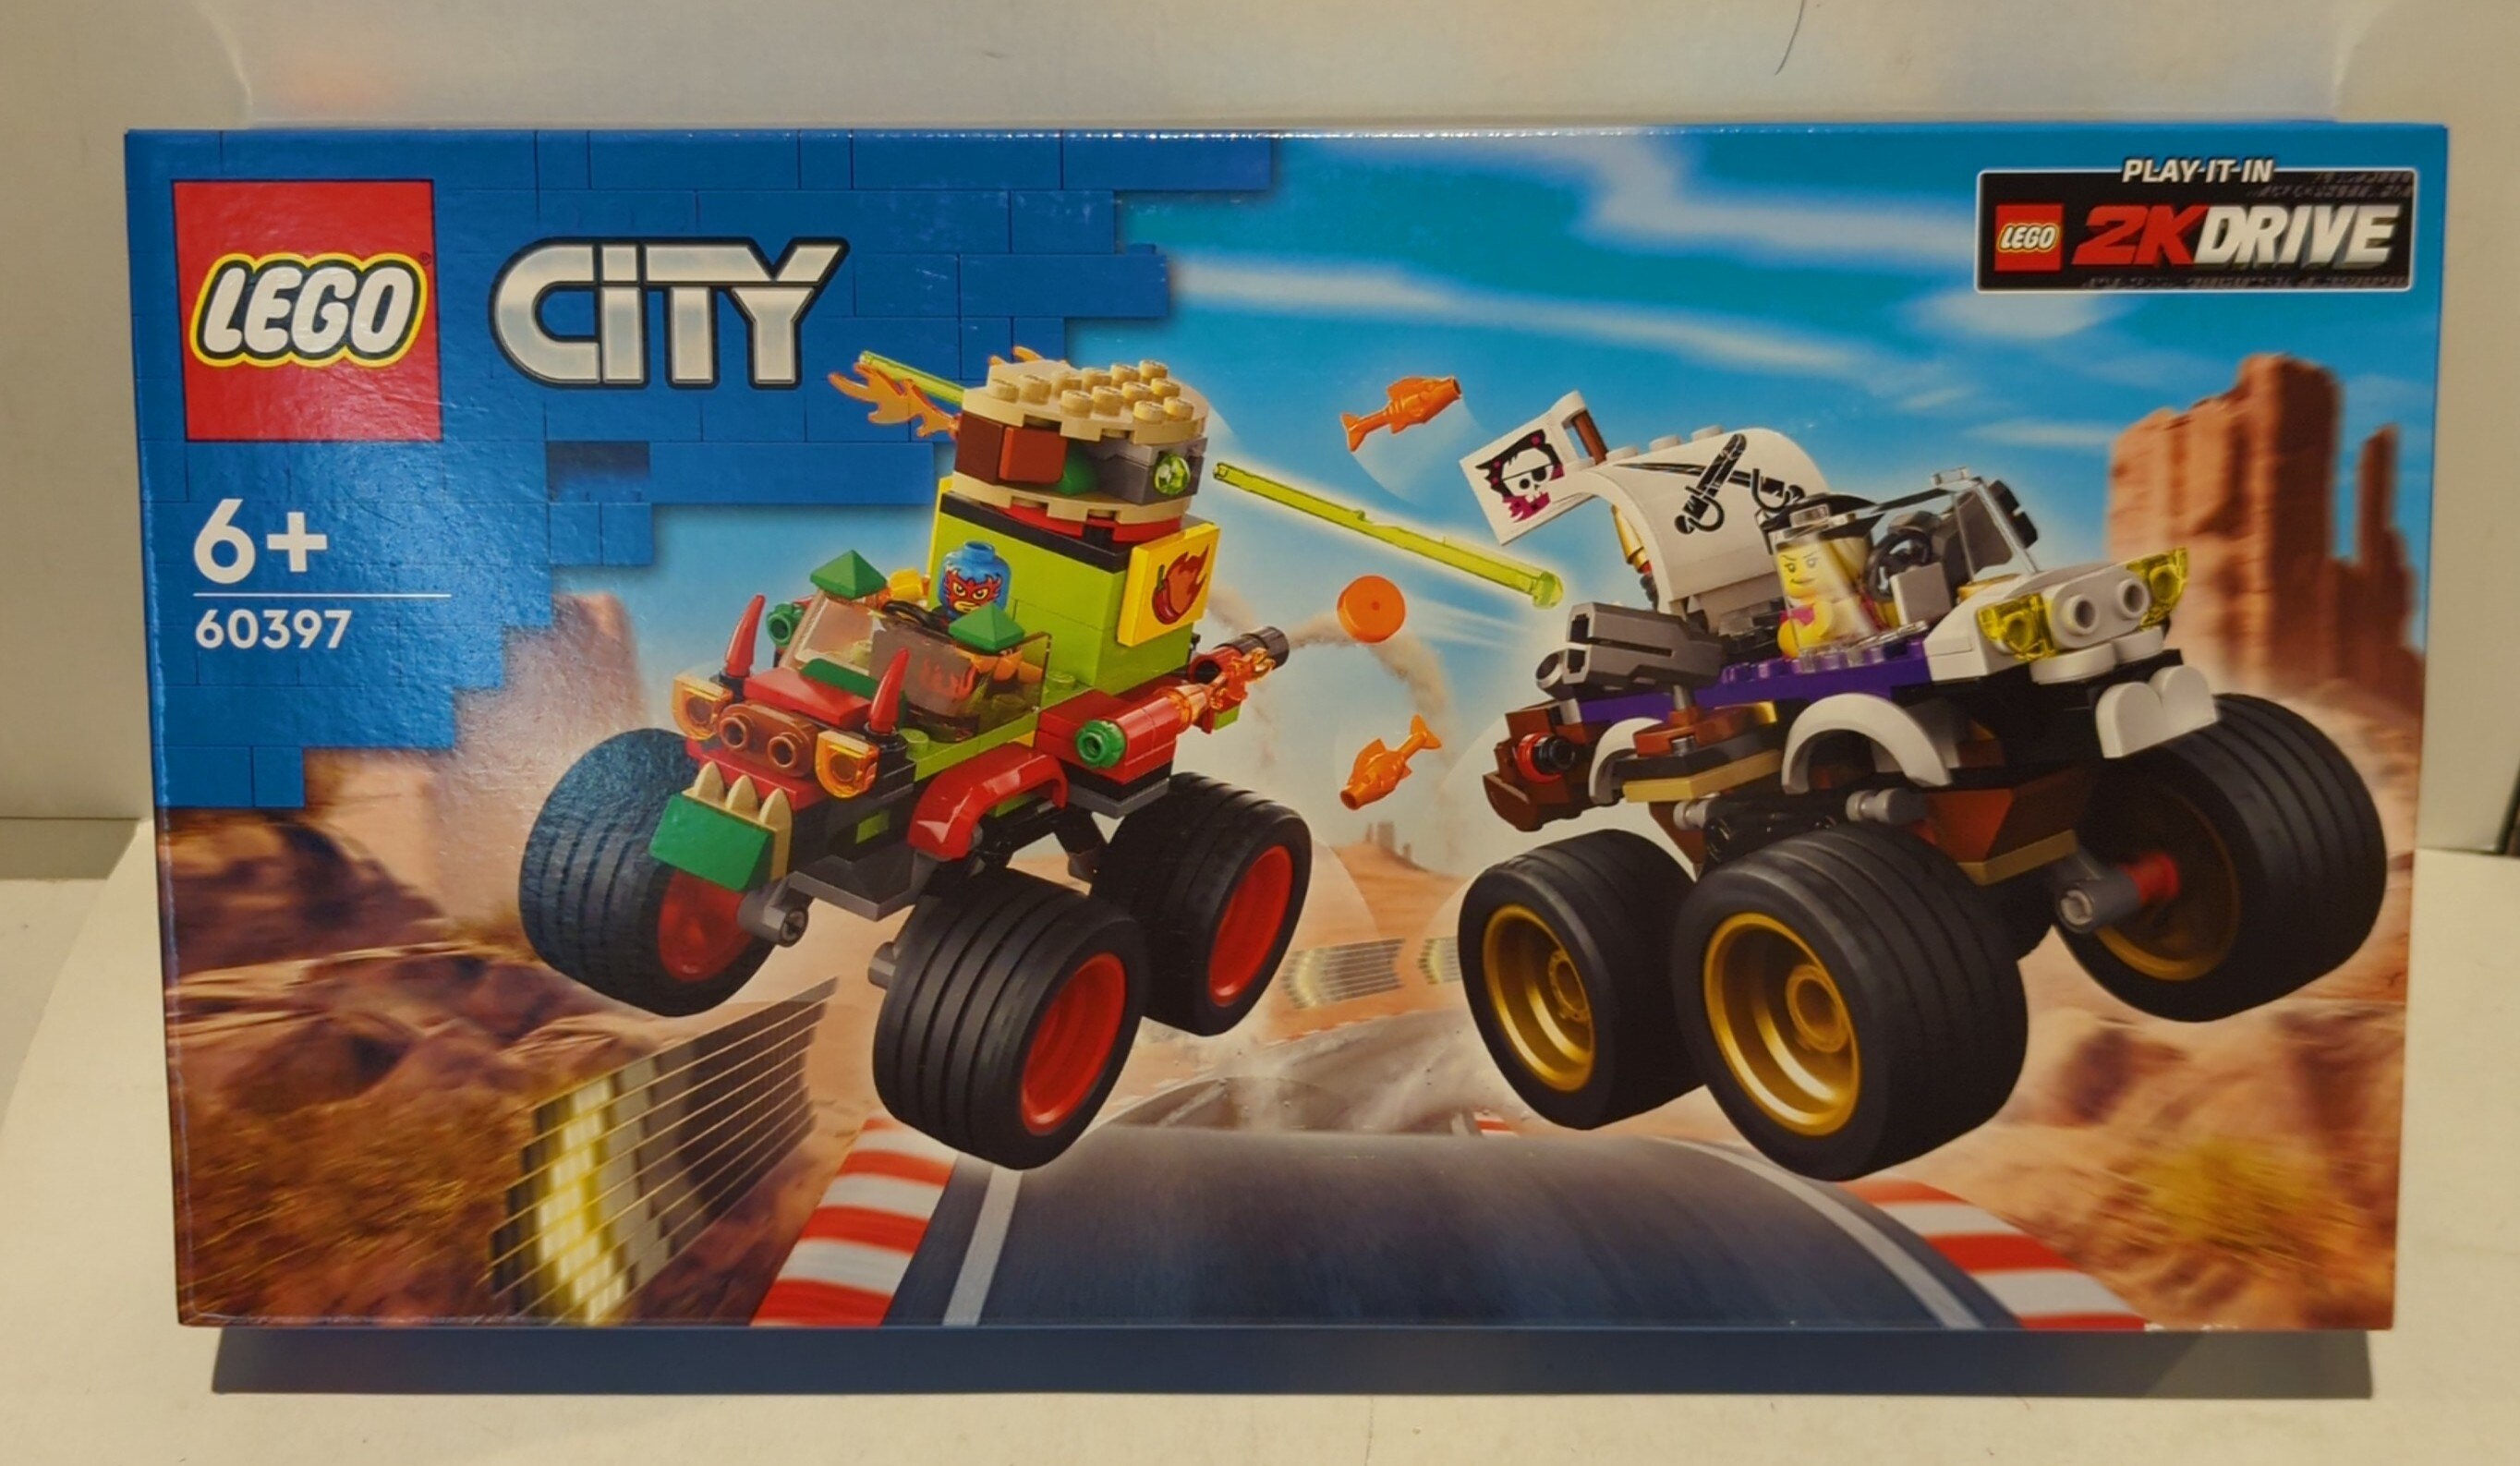 Monster Truck Race 60397, City